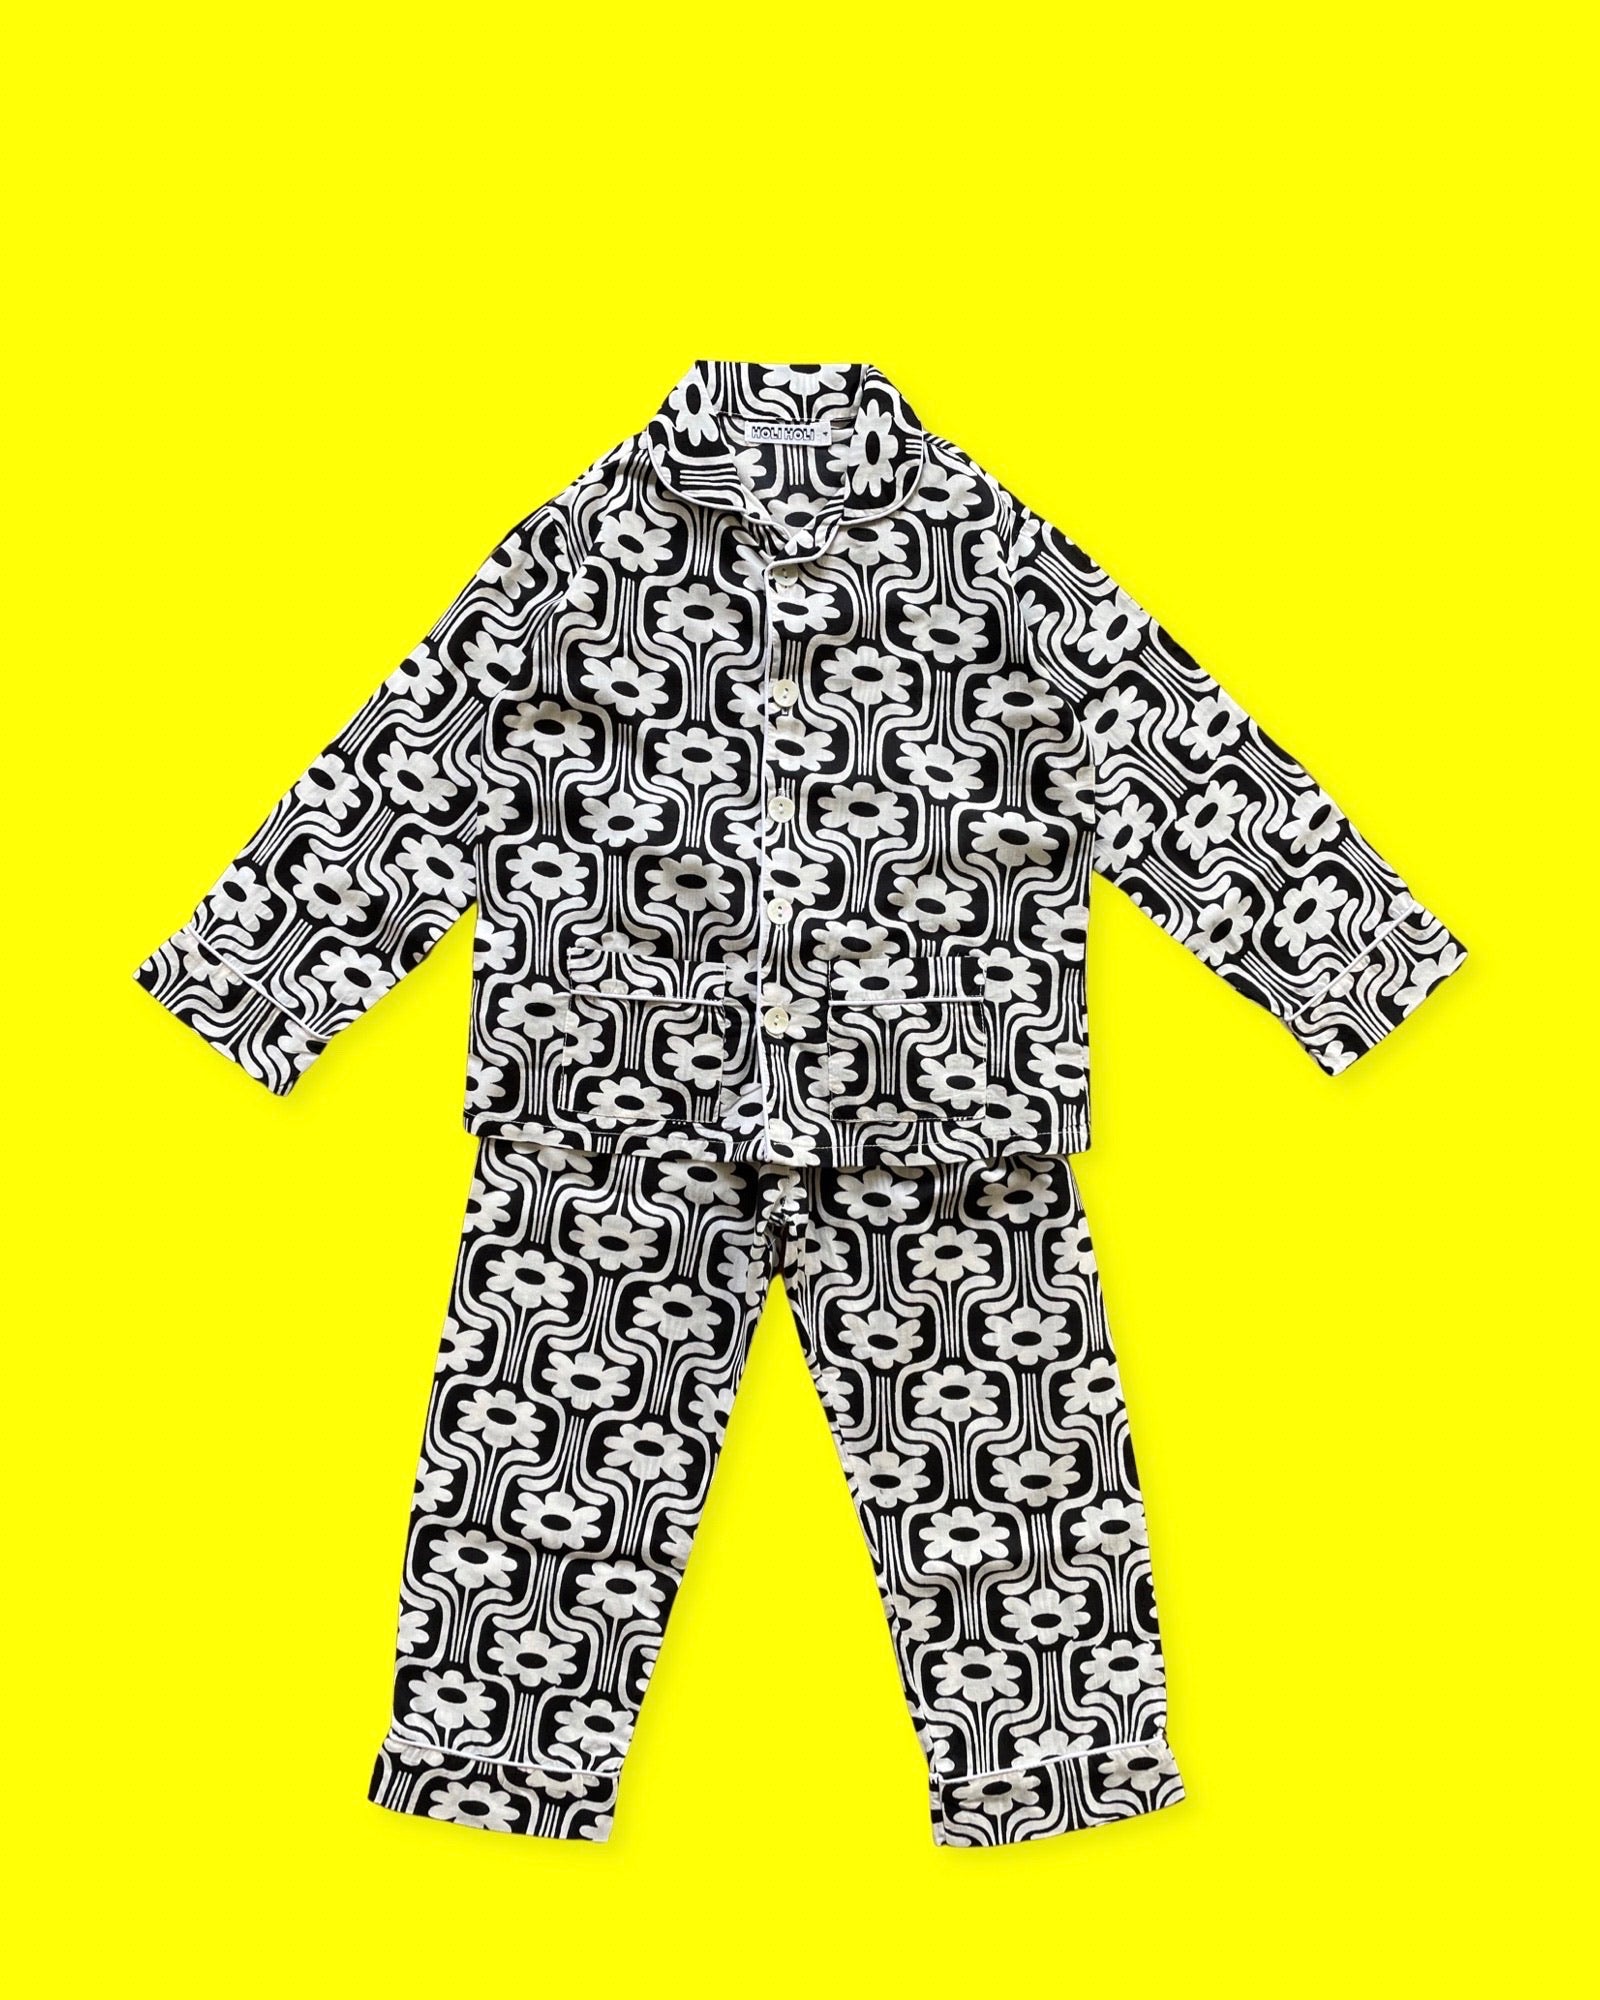 Ce pyjama enfant est un ensemble composé d'un haut boutonné à manches longues et d'un pantalon à taille élastique. L'imprimé est rétro à fleurs blanches sur fond noir, et un liseré blanc. La photo le présente sur un fond jaune.